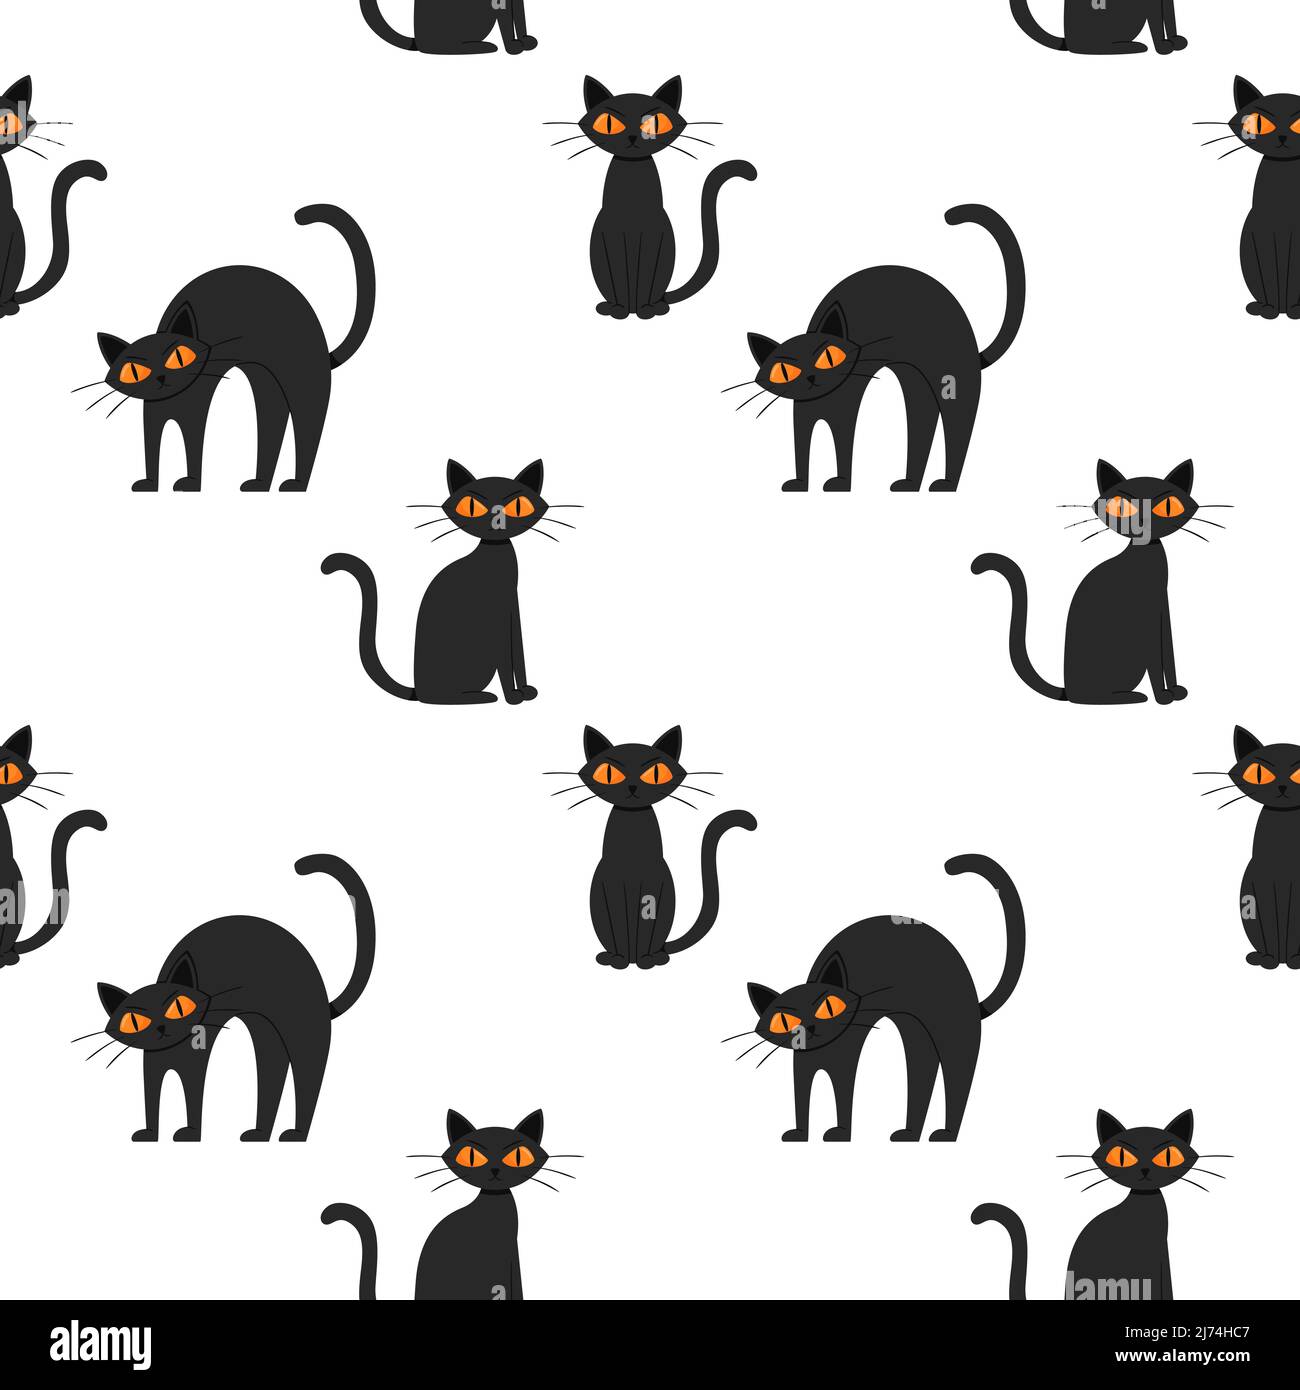 Nahtloses Muster mit einer schwarzen Halloween Katze mit gelben Augen. Flache Cartoon-Katze sitzt, steht und gewölbt den Rücken. Eine wütende, unzufriedene, runzelige Anim Stock Vektor